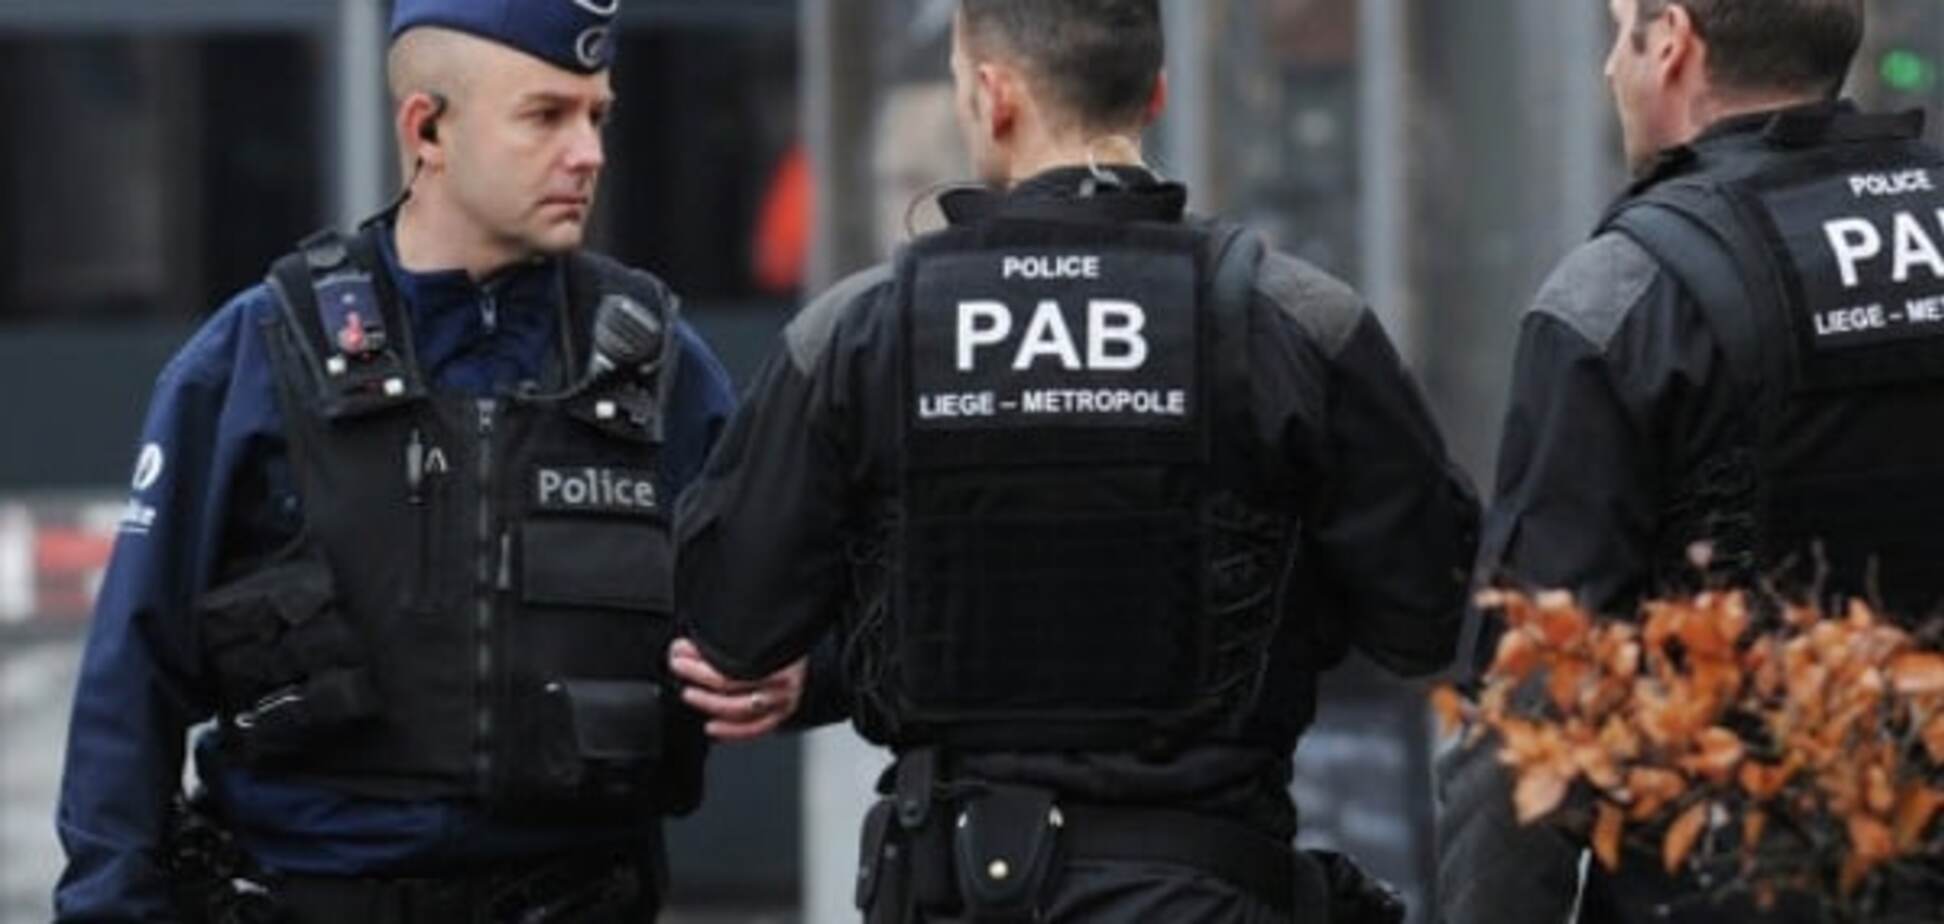 Поліція почала масштабну операцію із затримання пособників терористів у Брюсселі